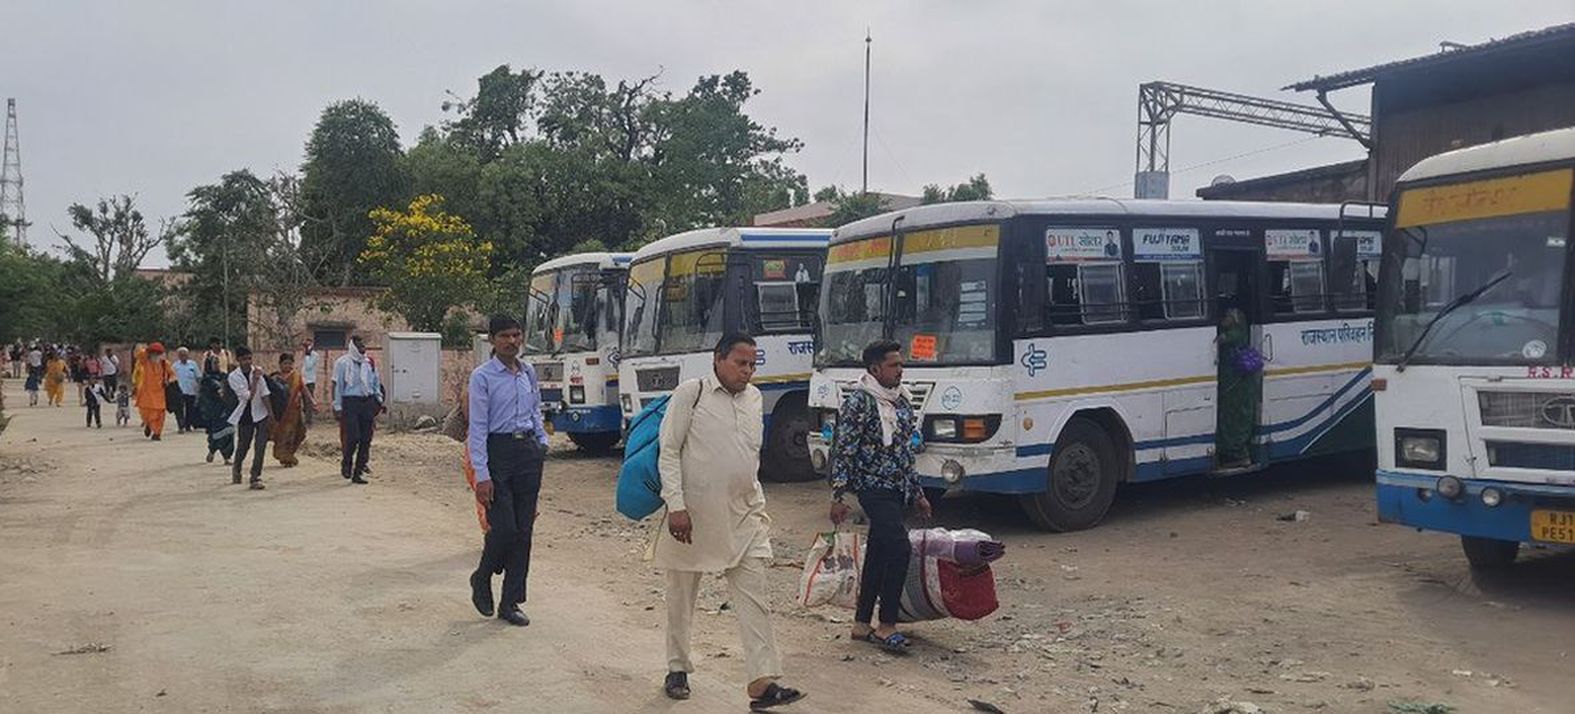 नवरात्र के बाद कैलादेवी मेला उतार पर, रोडवेज बसों की वापसी शुरू, रेलवे स्टेशन
यूनिट से रवाना की 50 बसें